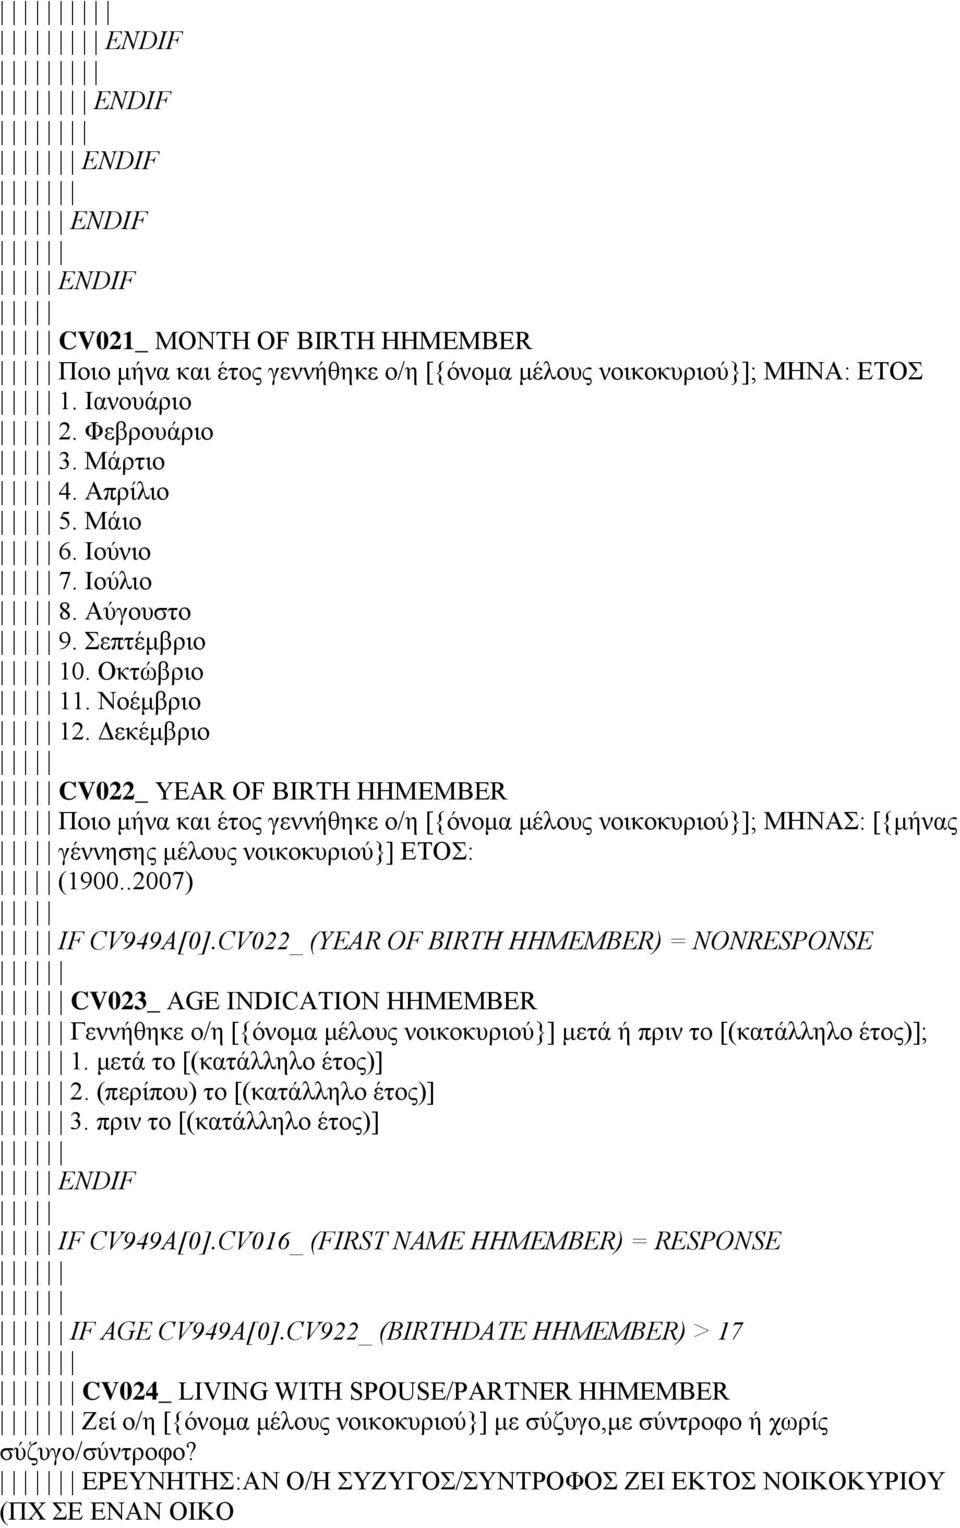 Δεκέμβριο CV022_ YEAR OF BIRTH HHMEMBER Ποιο μήνα και έτος γεννήθηκε ο/η [{όνομα μέλους νοικοκυριού}]; ΜΗΝΑΣ: [{μήνας γέννησης μέλους νοικοκυριού}] ΕΤΟΣ: (1900..2007) IF CV949A[0].